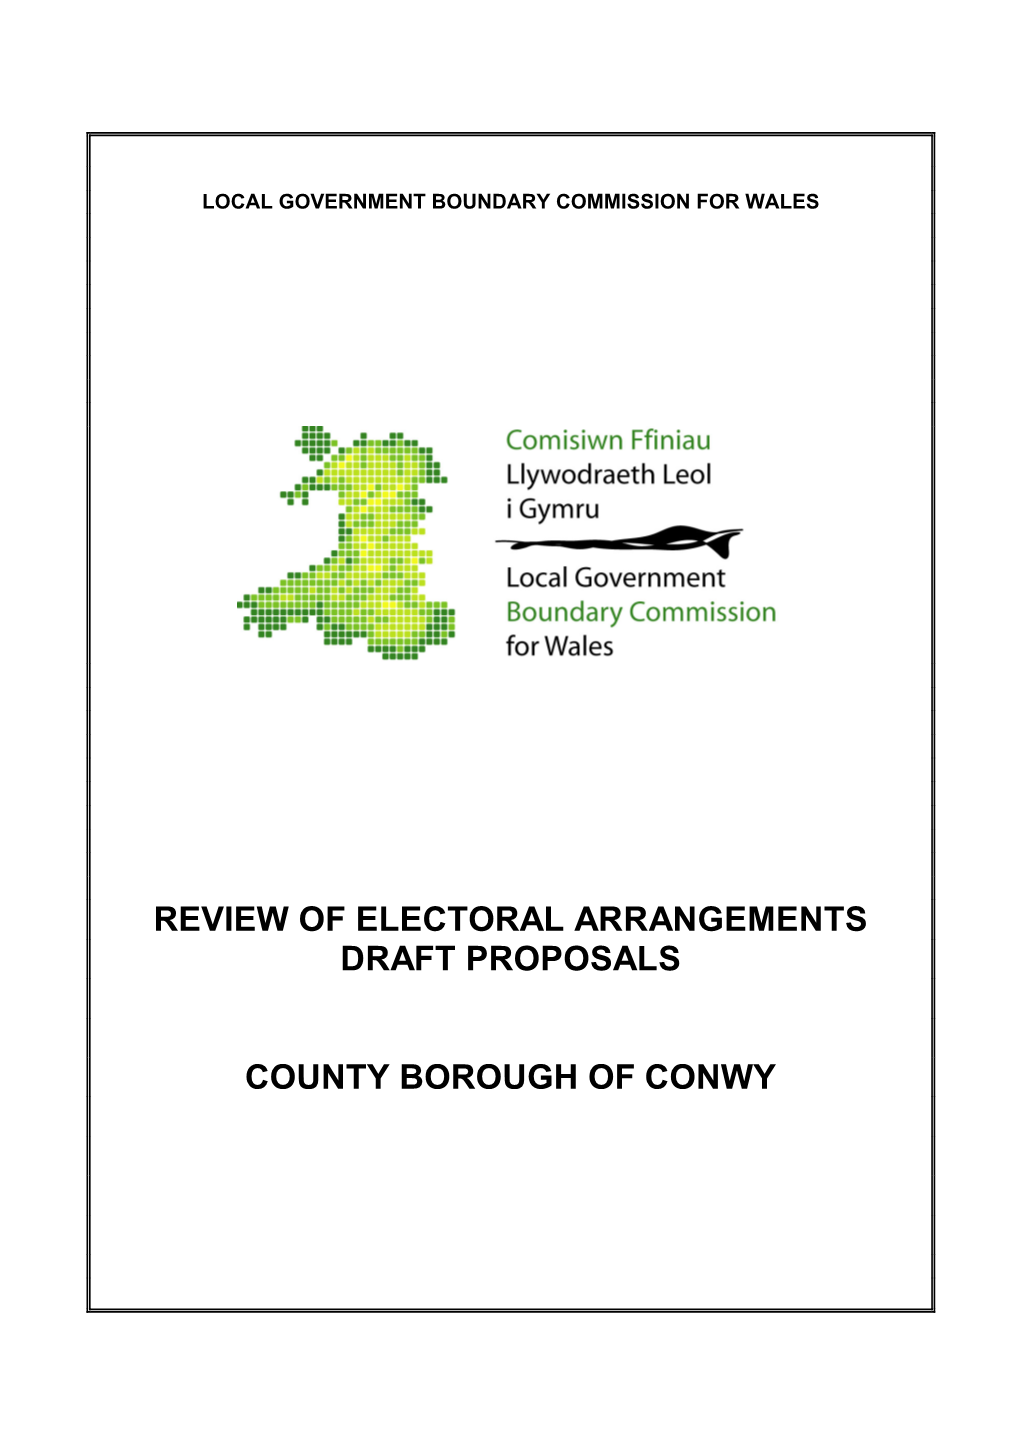 Review of Electoral Arrangements Draft Proposals